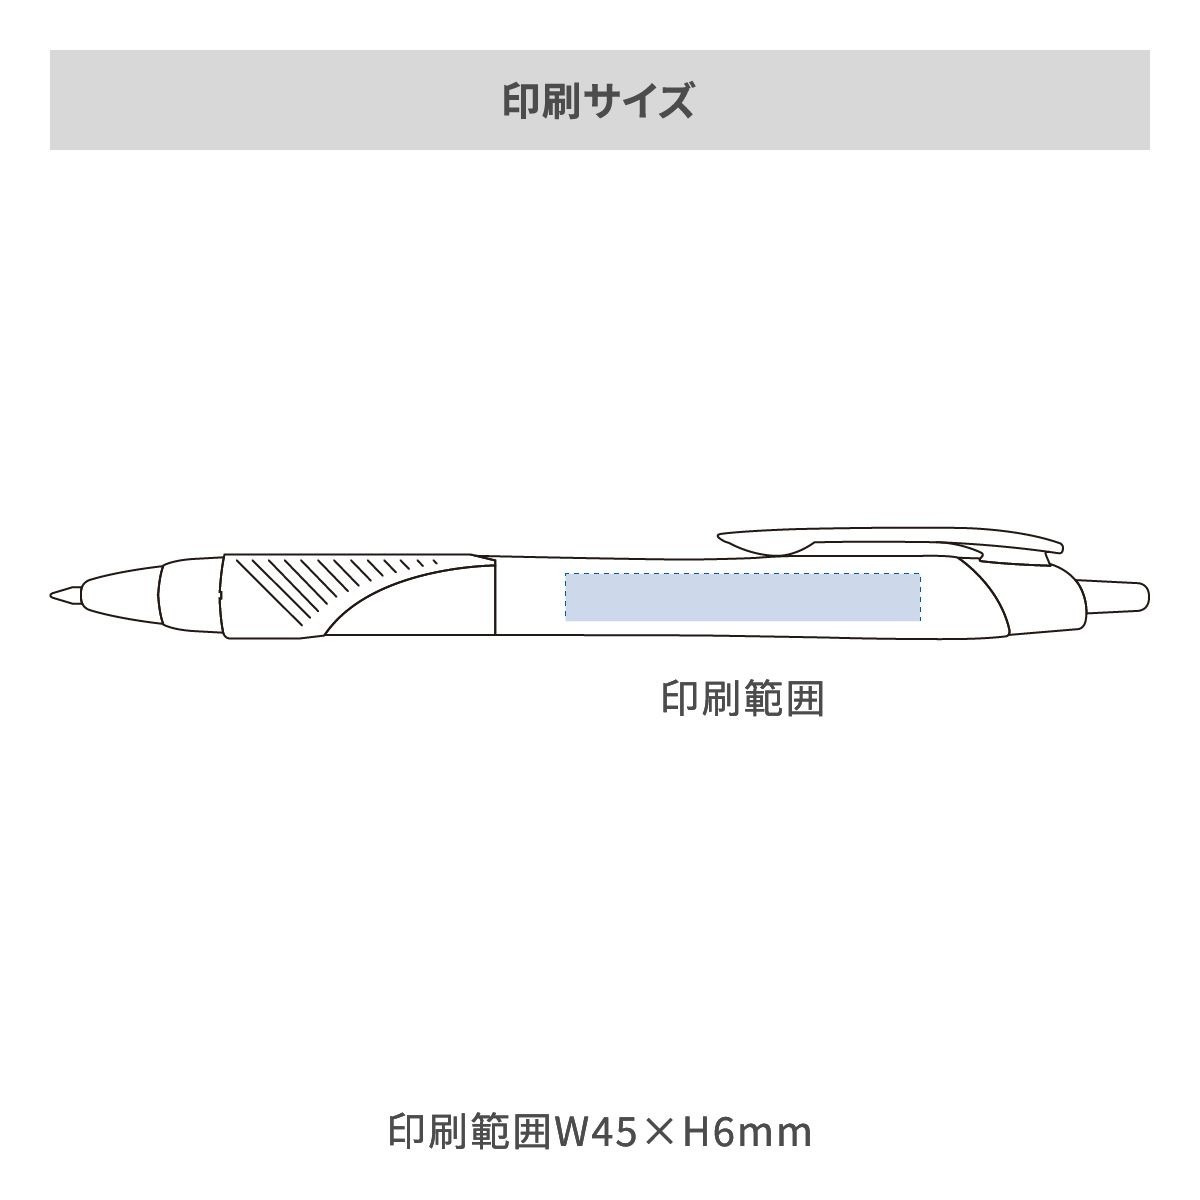 三菱鉛筆 ジェットストリーム 白軸 0.7mmの名入れ範囲